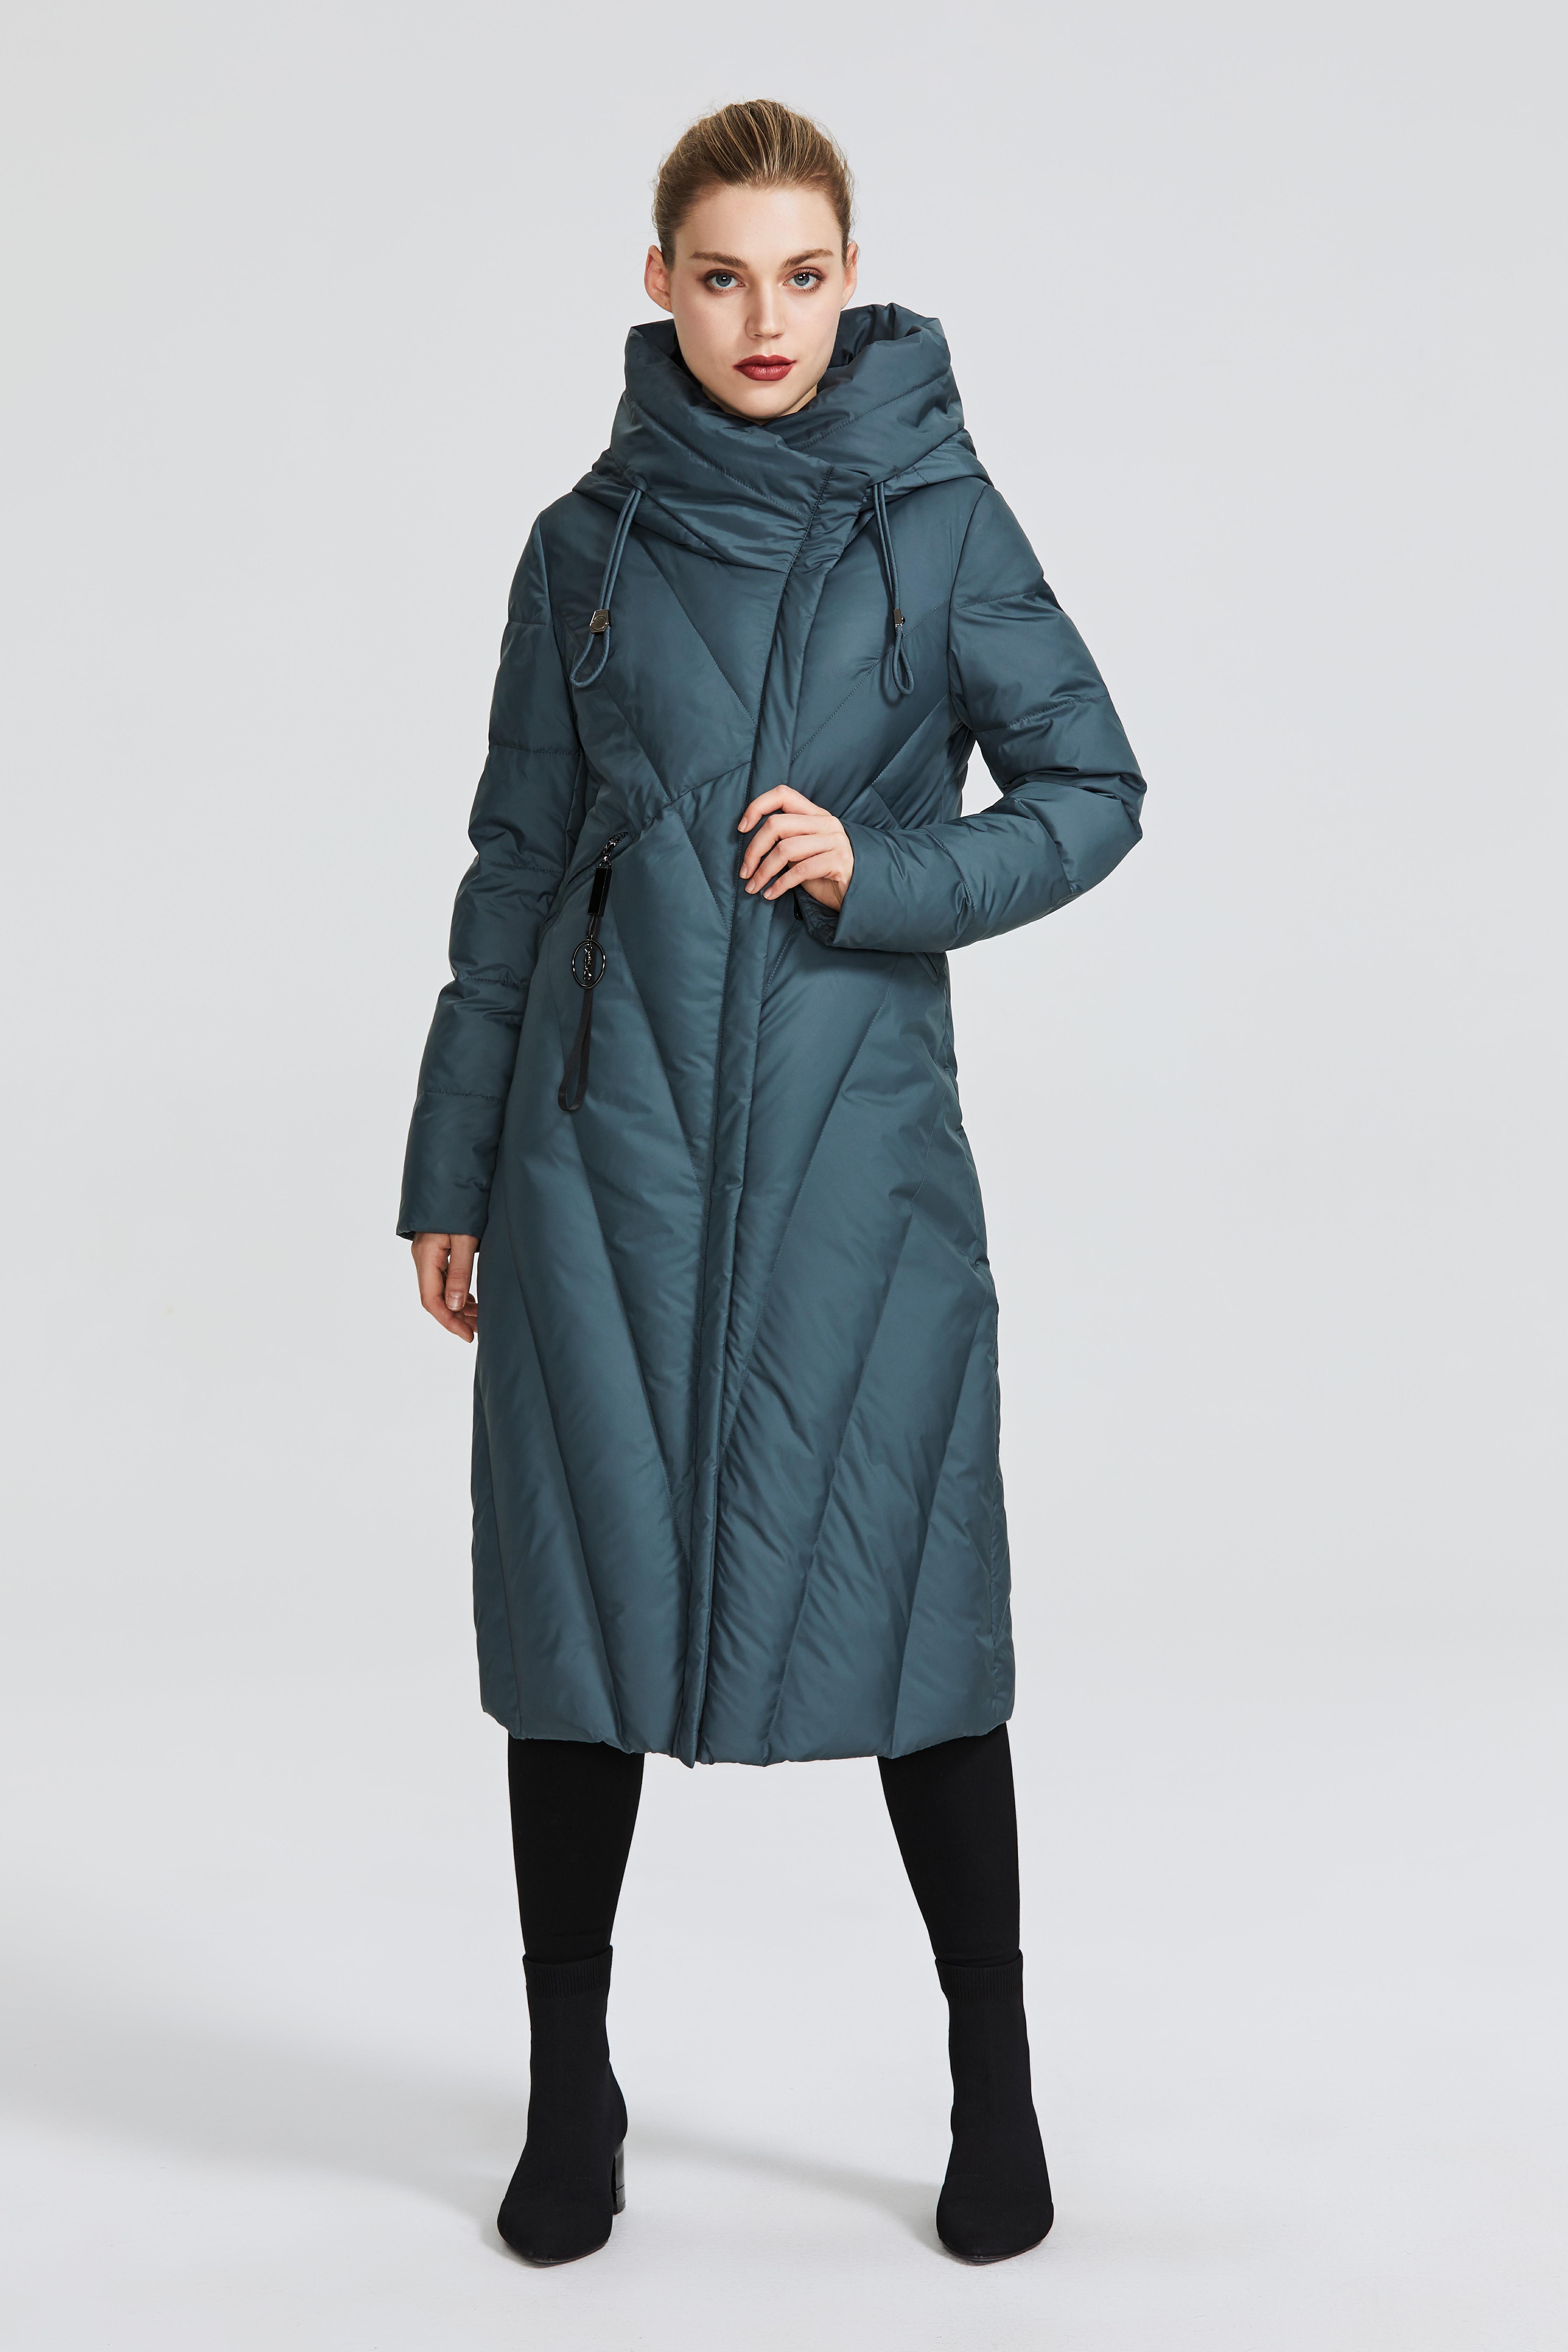 MIEGOFCE D99266 Новая Коллекция Женское Пальто С Устойчивым Ветрозащитным Воротником Женская Парка